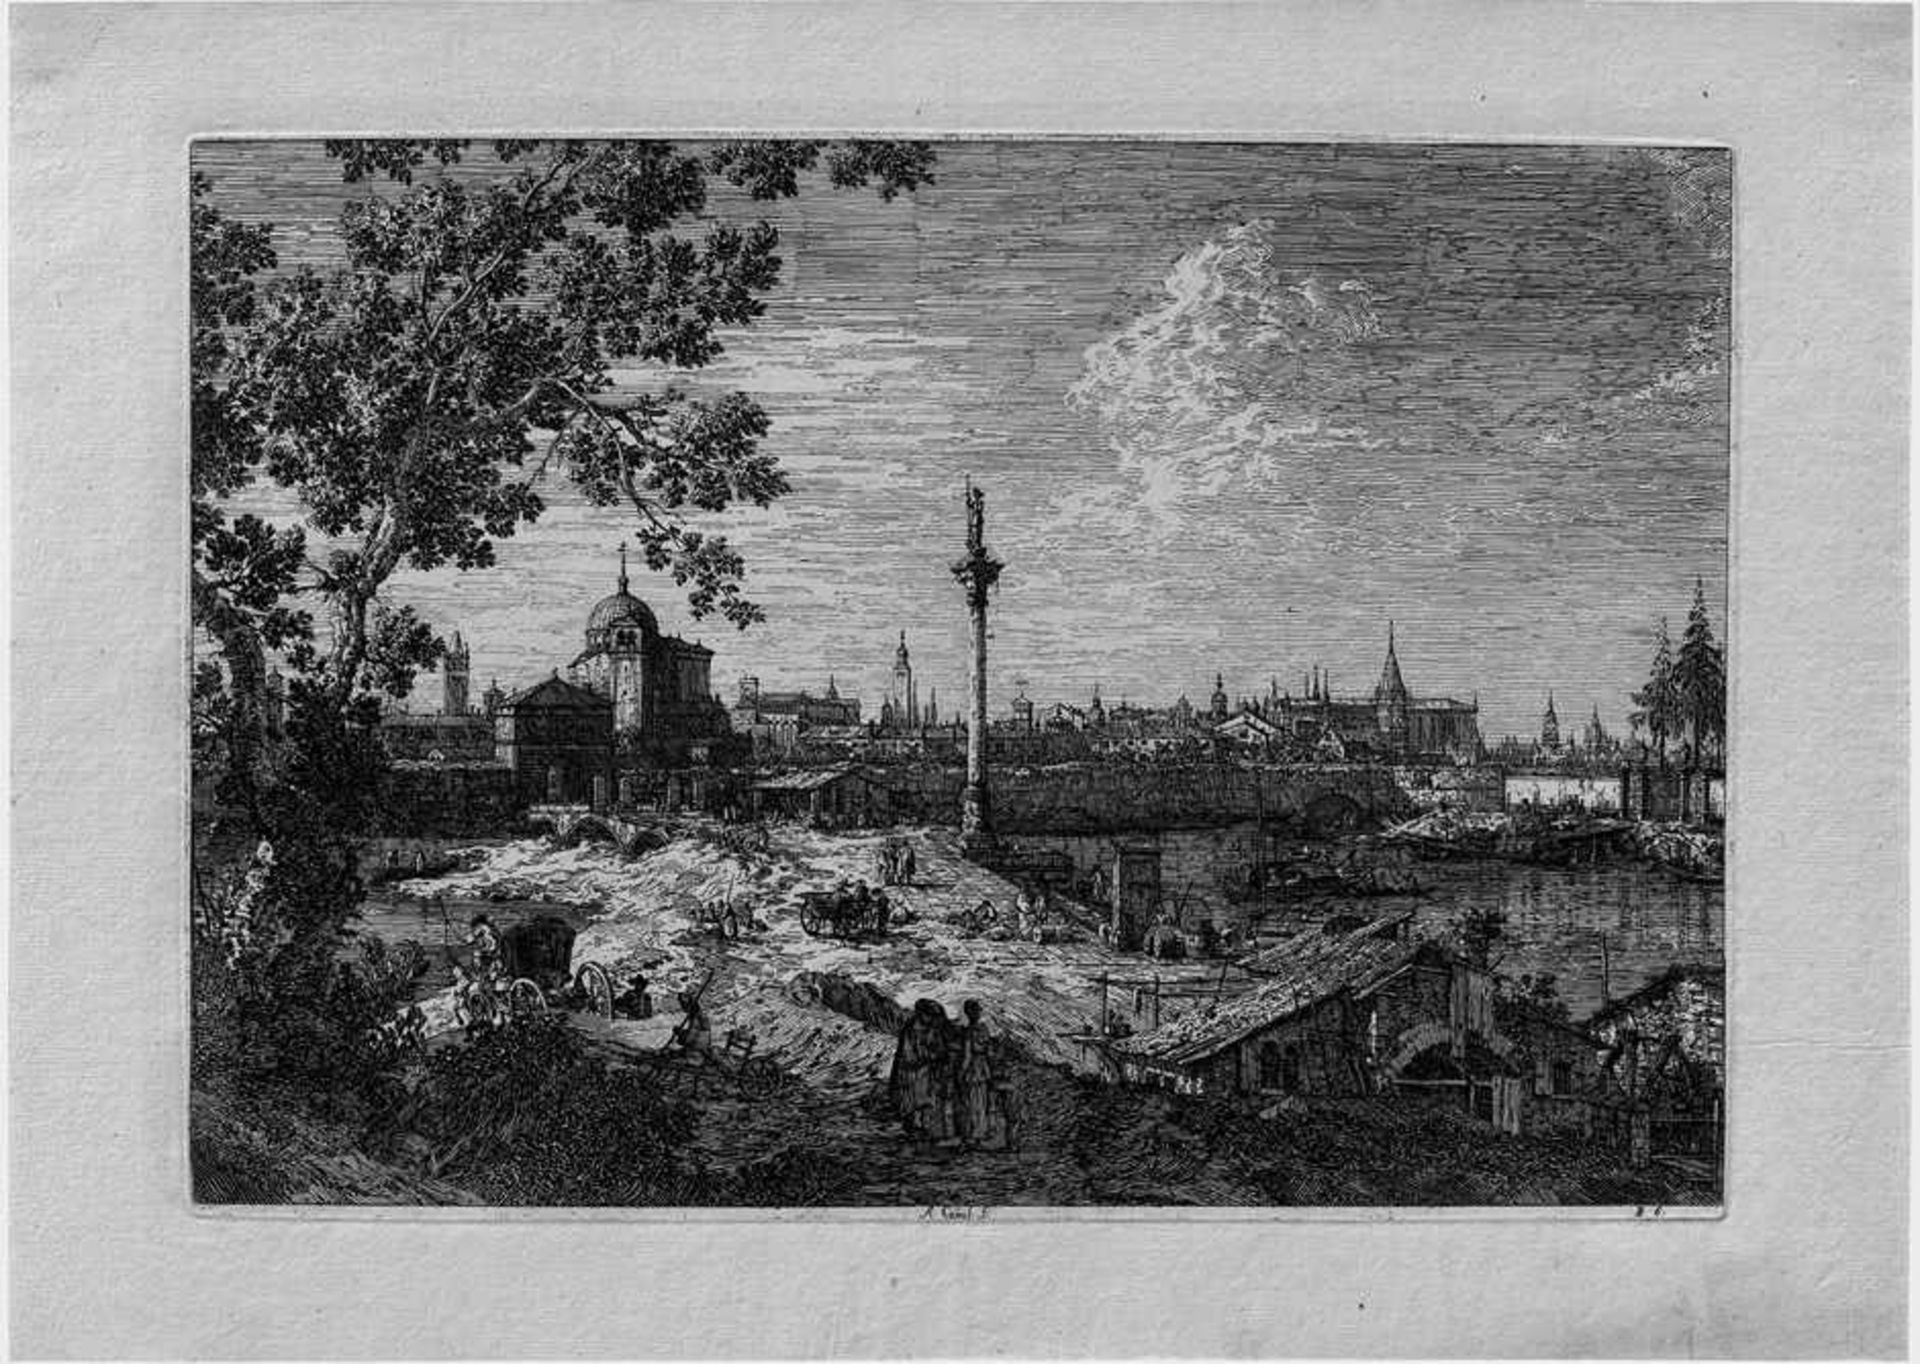 Canaletto: Imaginäre Ansicht von PaduaImaginäre Ansicht von Padua. Radierung. 30,3 x 42,7 cm. De